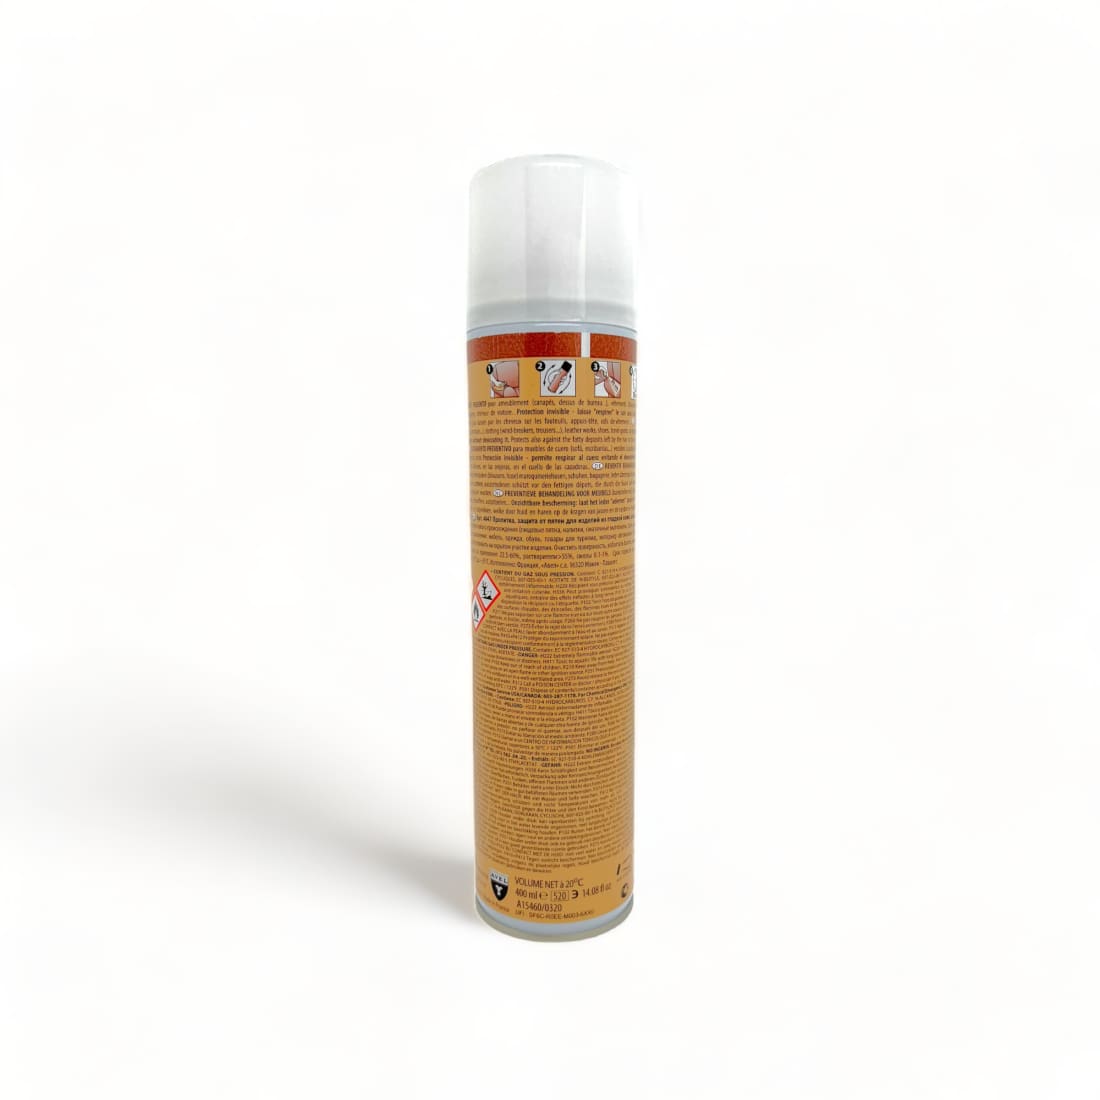 Spray Imperméabilisant Anti-taches Cuir - Avel - 400 ml -